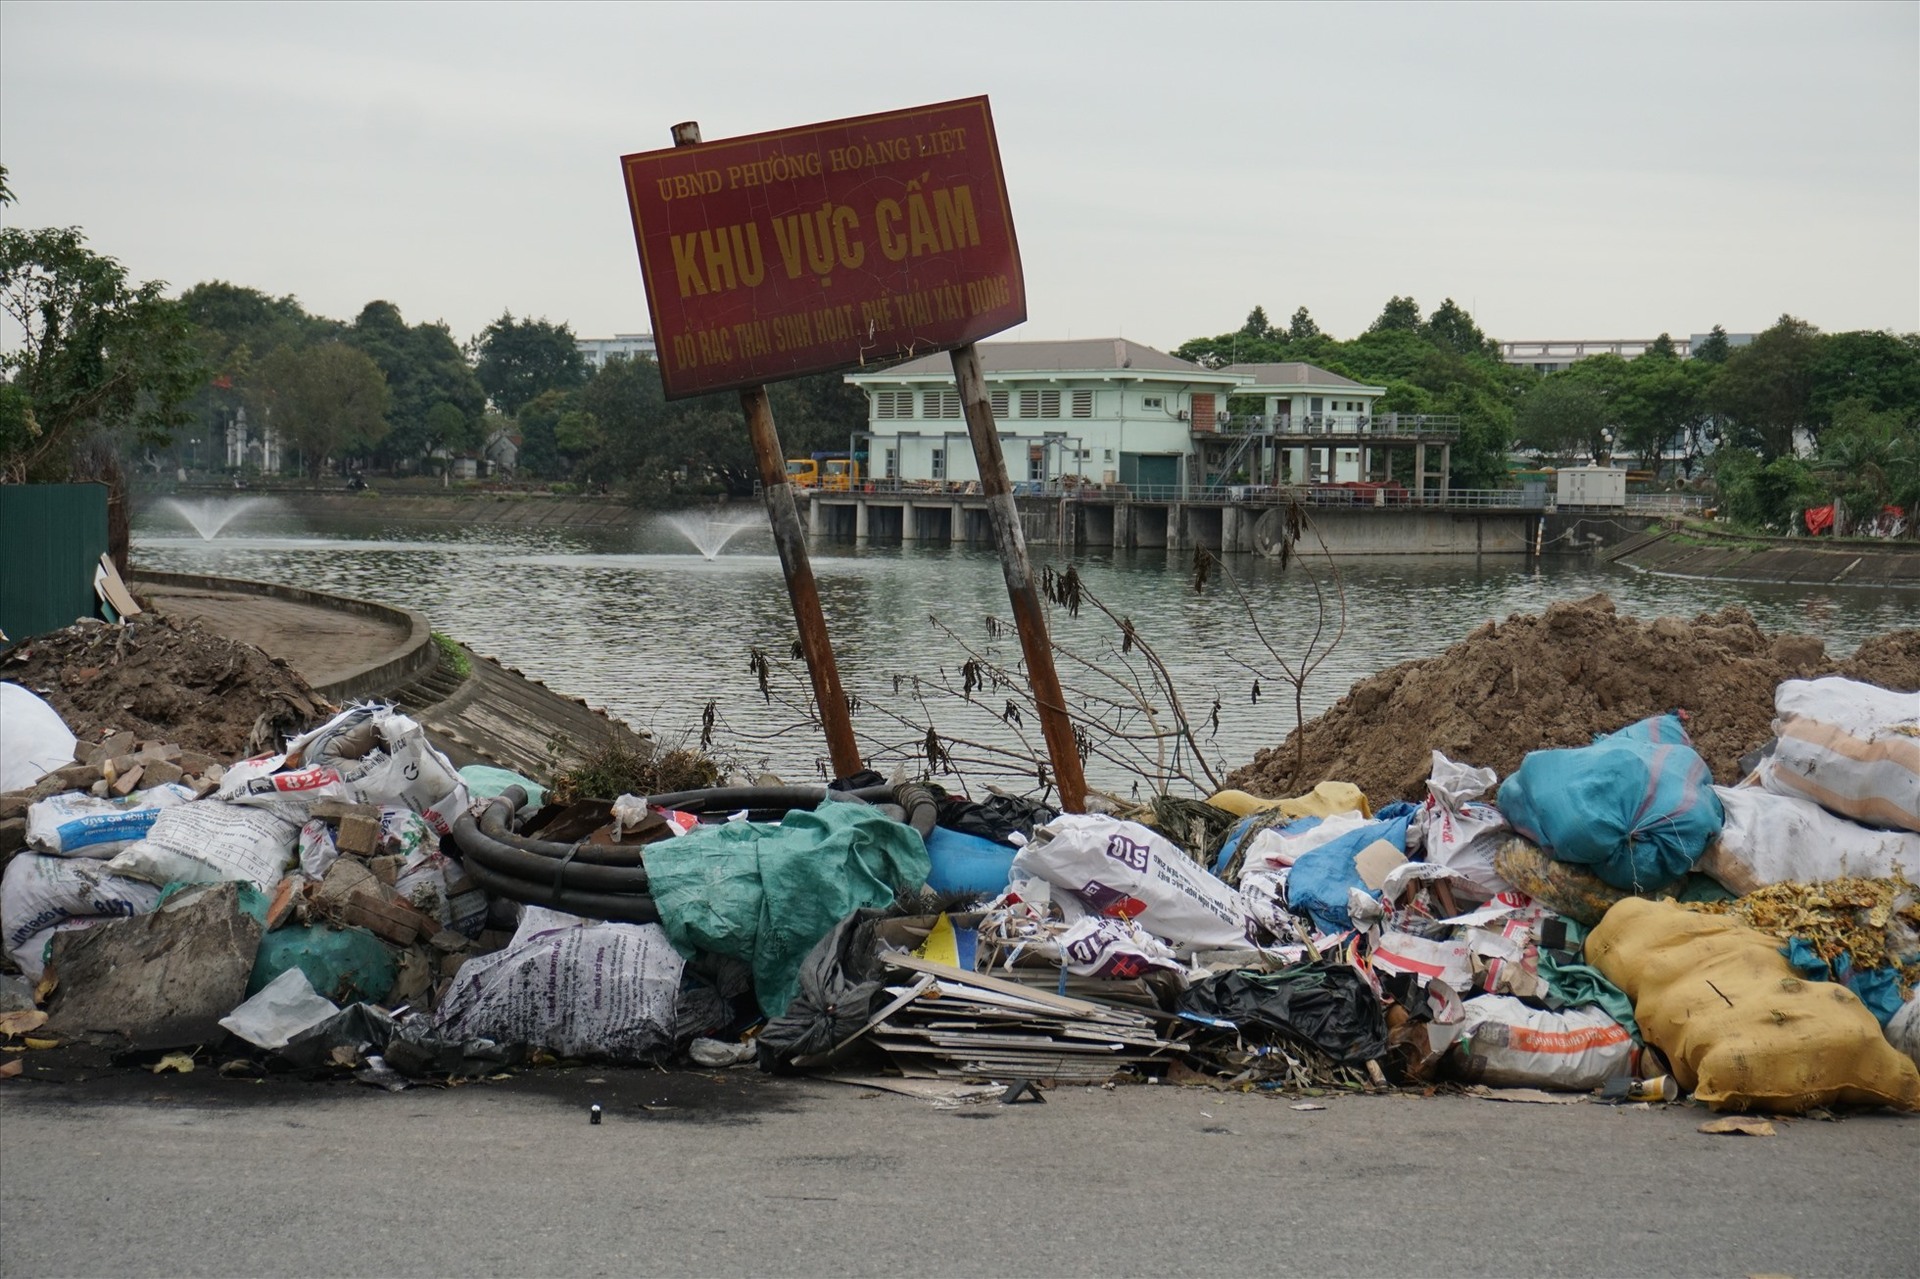 Bãi rác chạy dọc khu dân cư bán đảo Linh Đàm. Ảnh: Lao Động